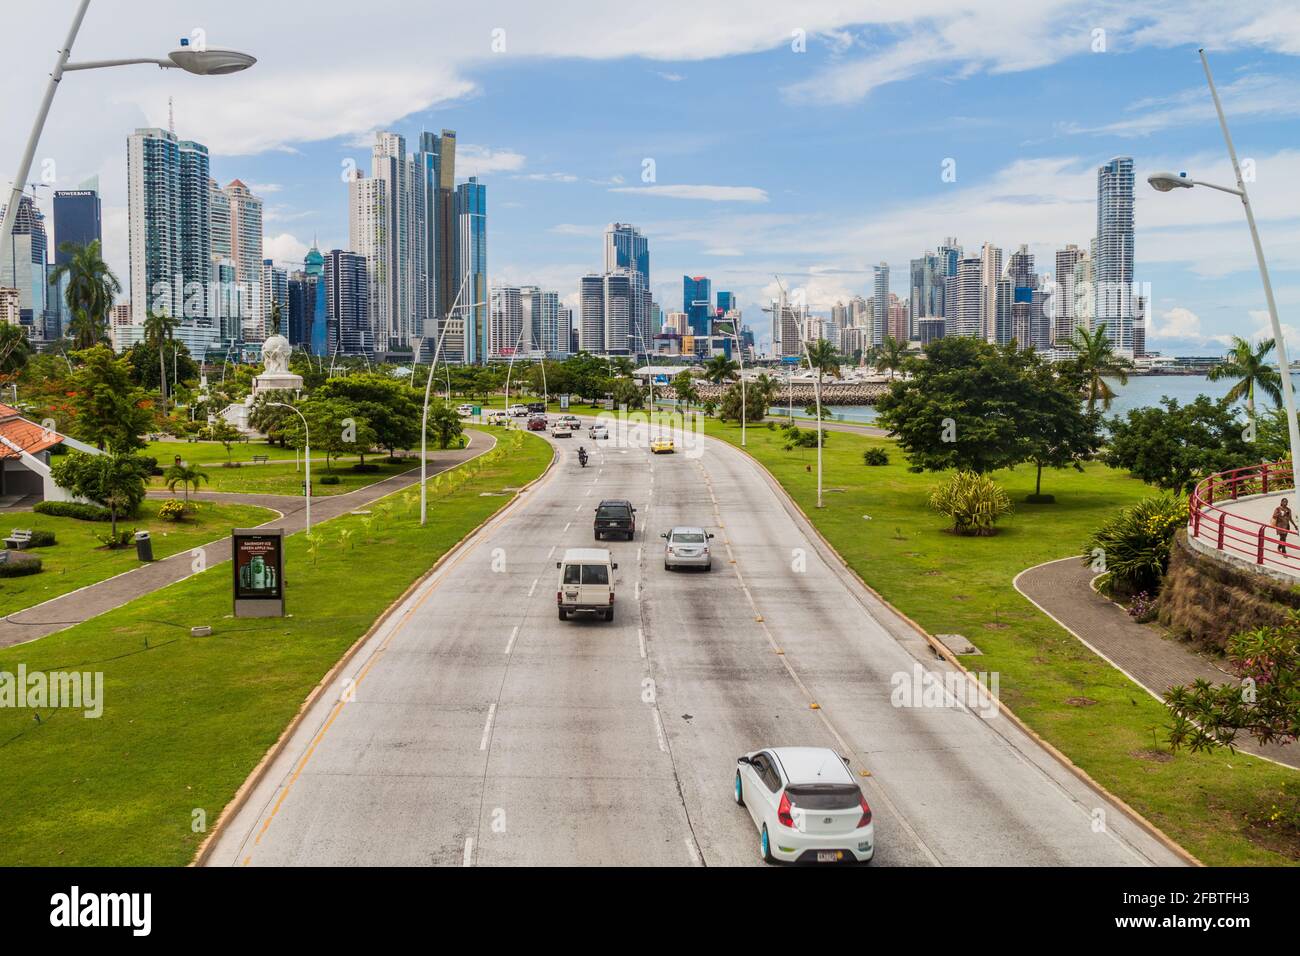 PANAMA CITY, PANAMA - 30 MAGGIO 2016: Vista dei grattacieli moderni e un viale Balboa traffico a Panama City. Foto Stock